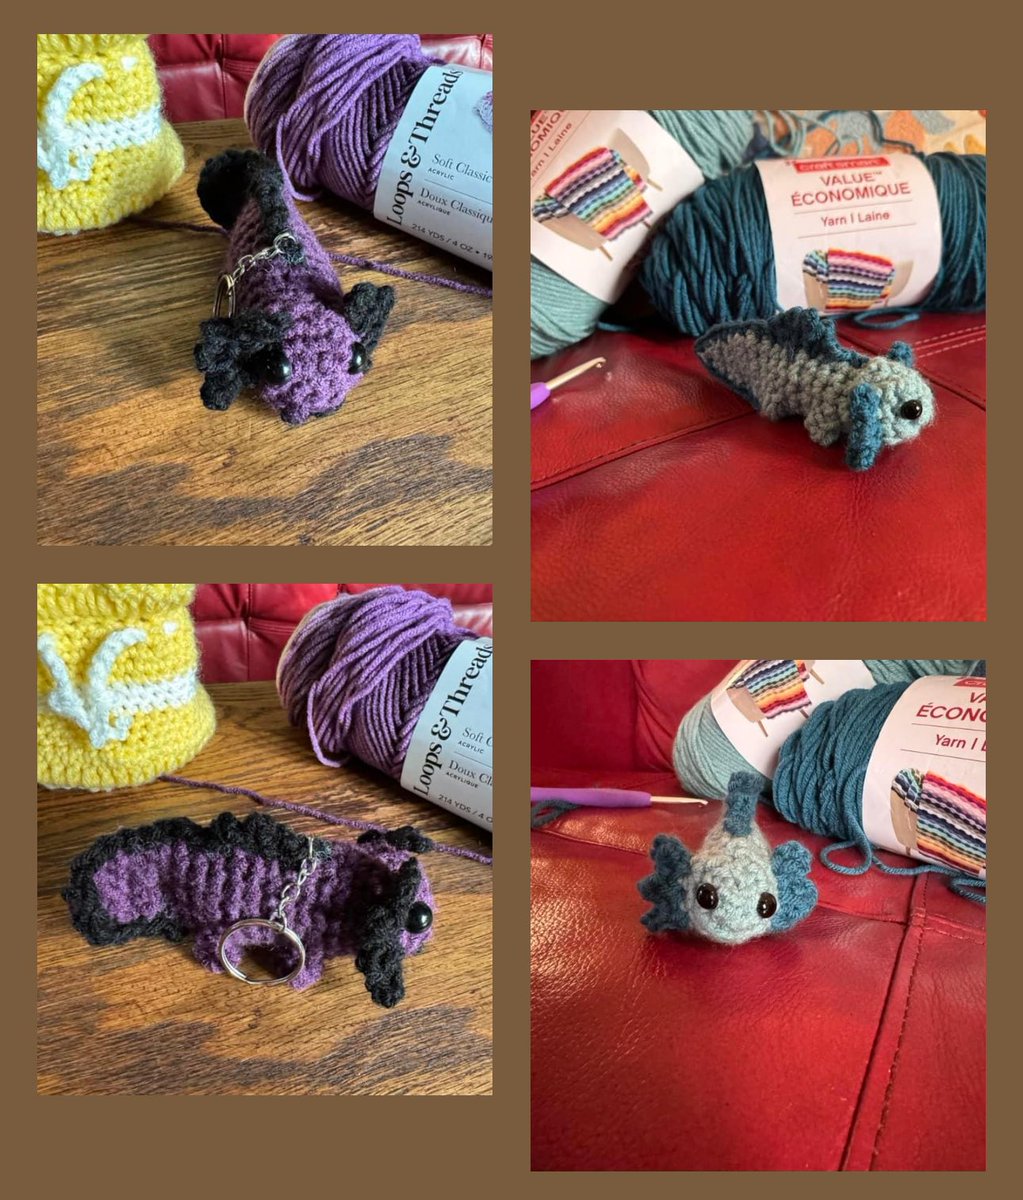 Crochet axolotls! 

#crochet #smallartist #cutethings #yarnart #smallproject #artmoots